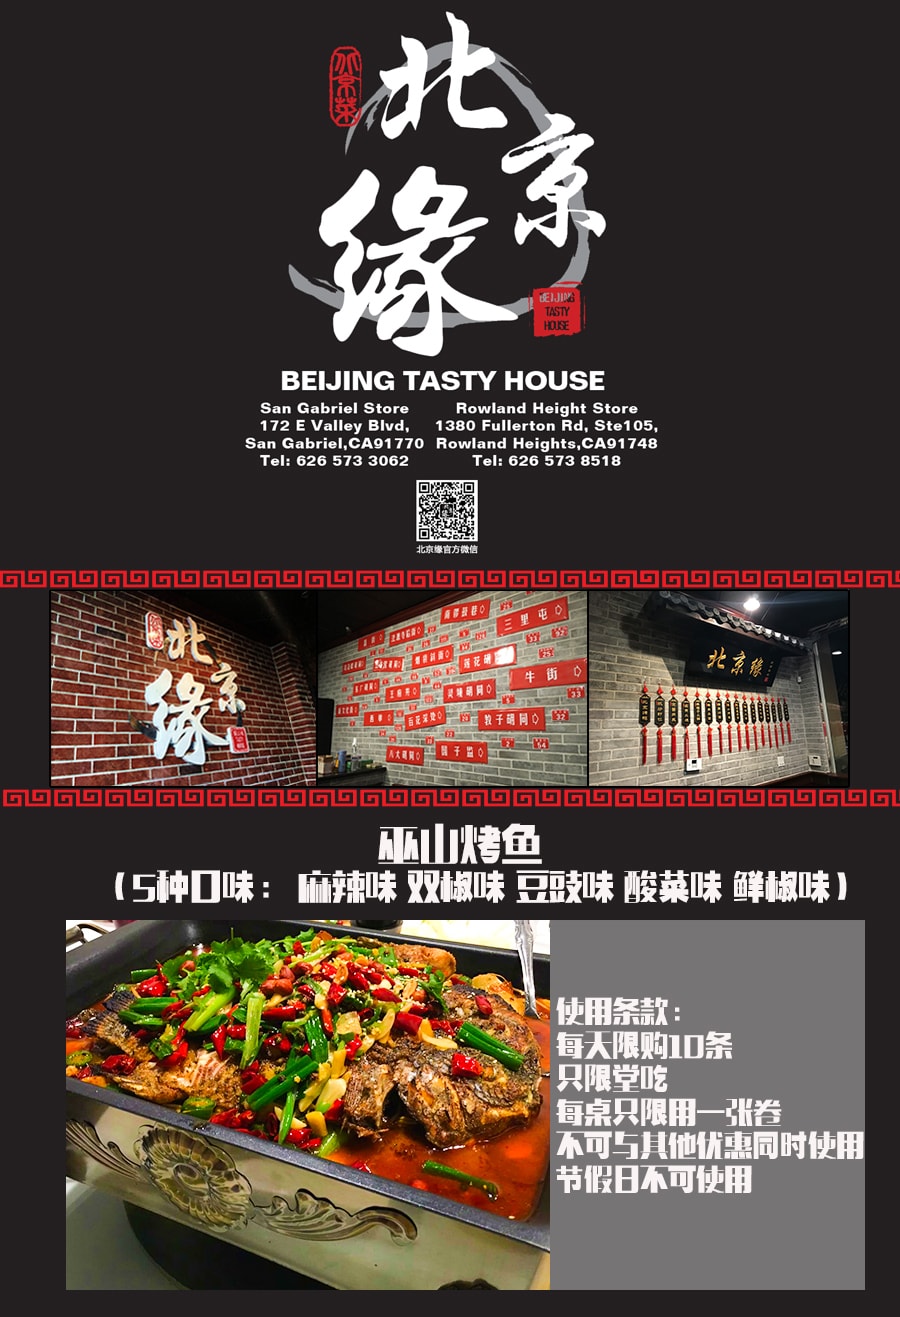 北京缘  巫山烤鱼 5种口味麻辣味、双椒味、豆豉味、酸菜味、鲜椒味 任选一种 $21.99